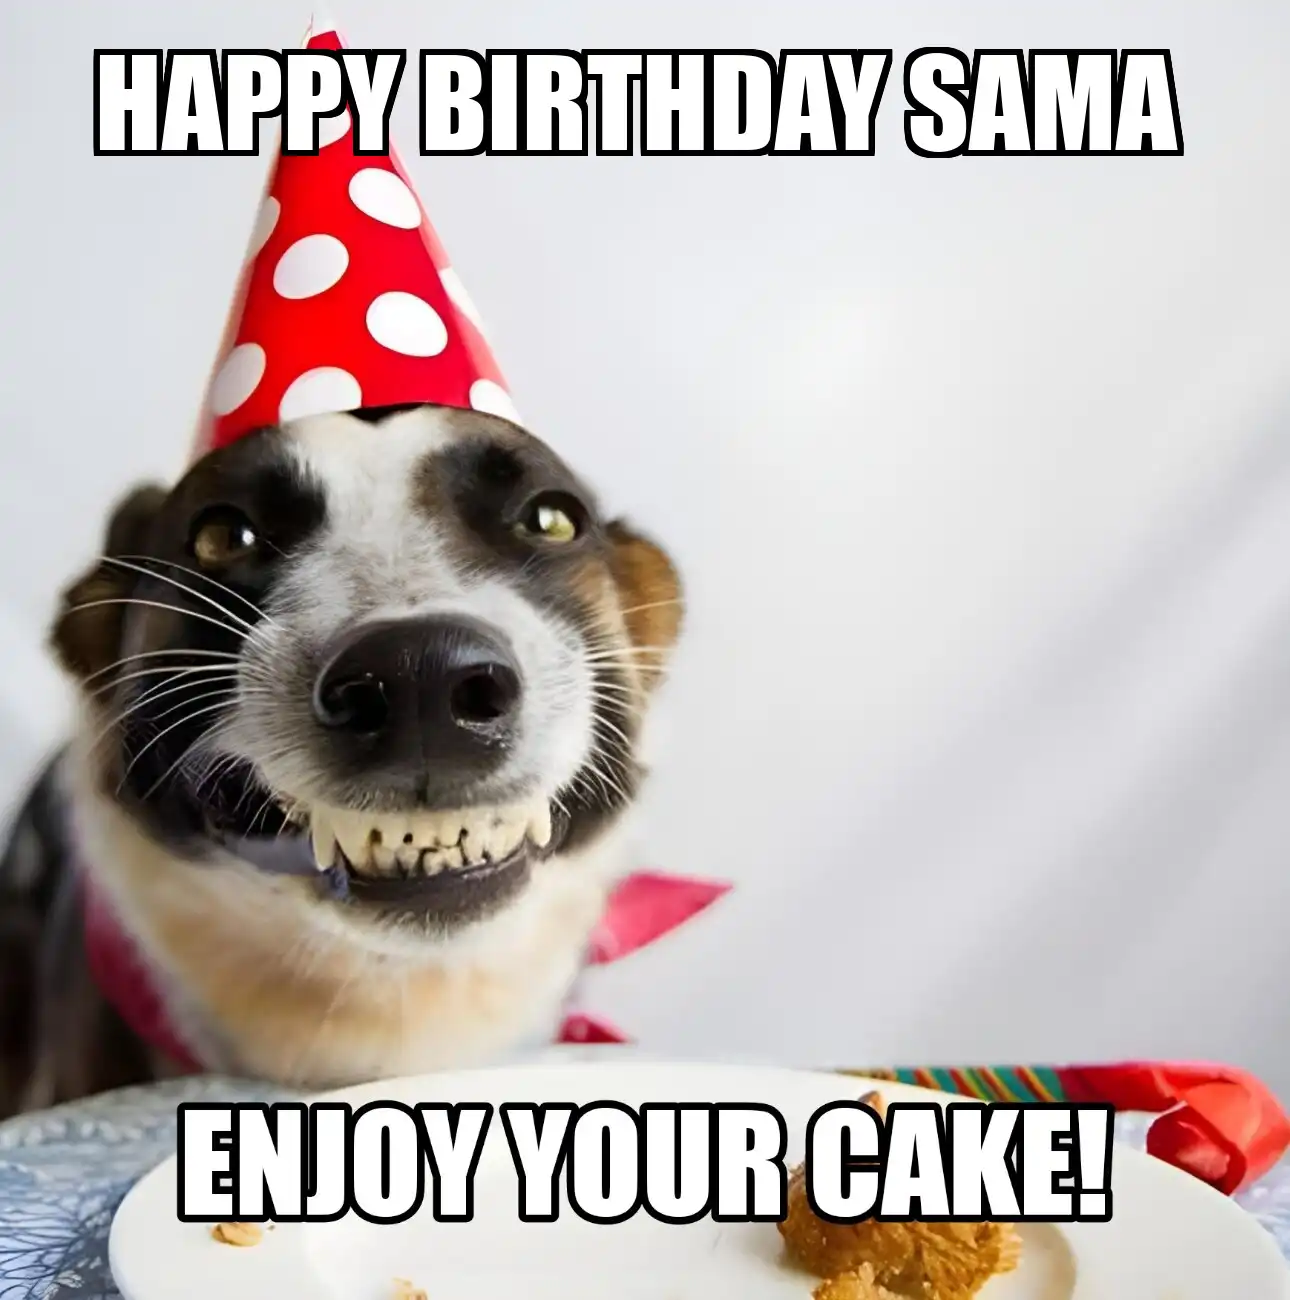 Happy Birthday Sama Enjoy Your Cake Dog Meme